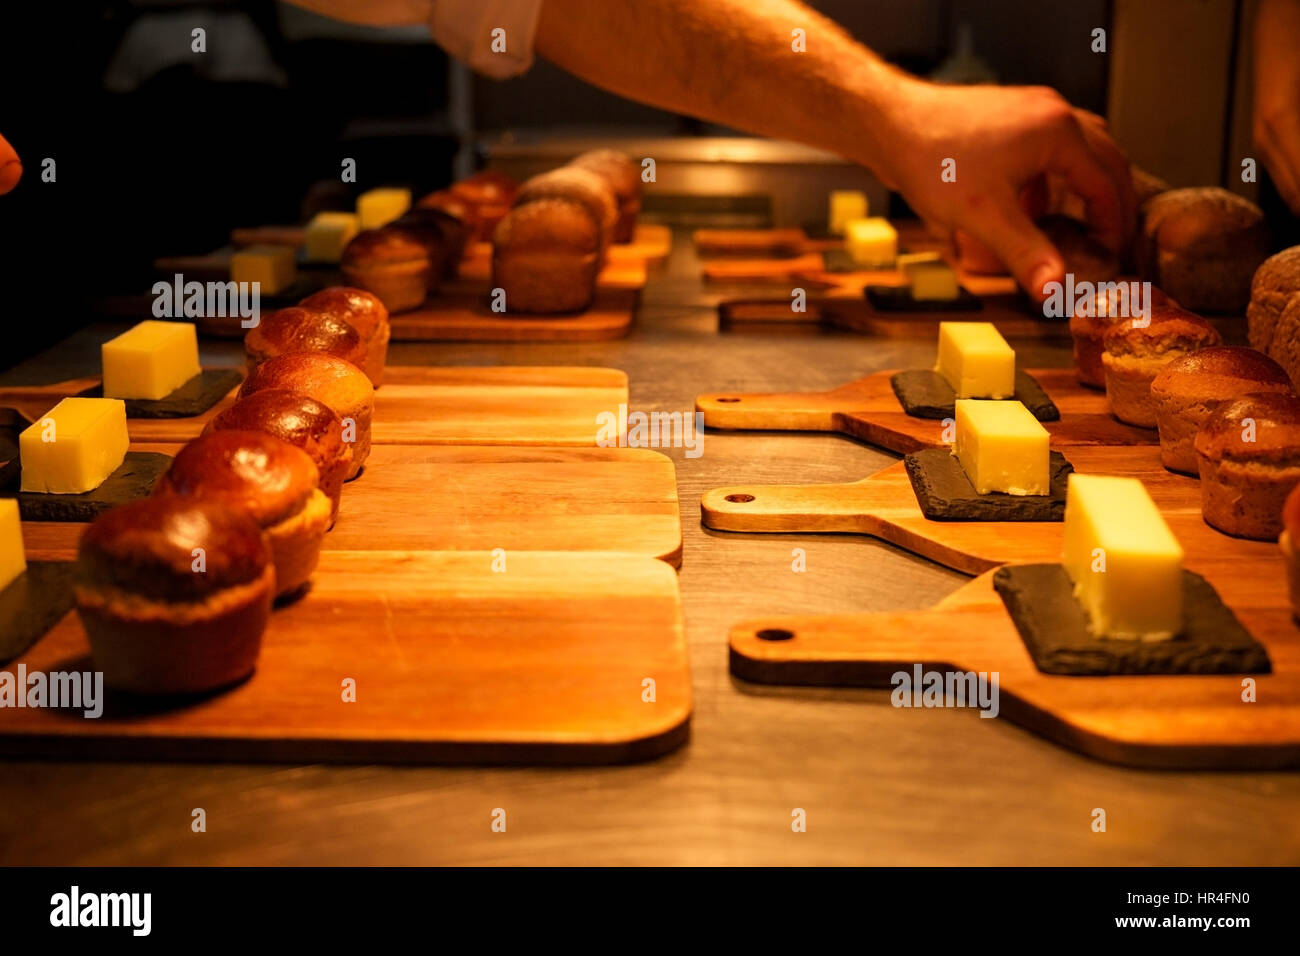 Petits rouleaux de pain fait maison et des carrés de beurre sur des planches organisé sur argent haut cuisine prêt à être servi dans un restaurant, les chefs ha Banque D'Images